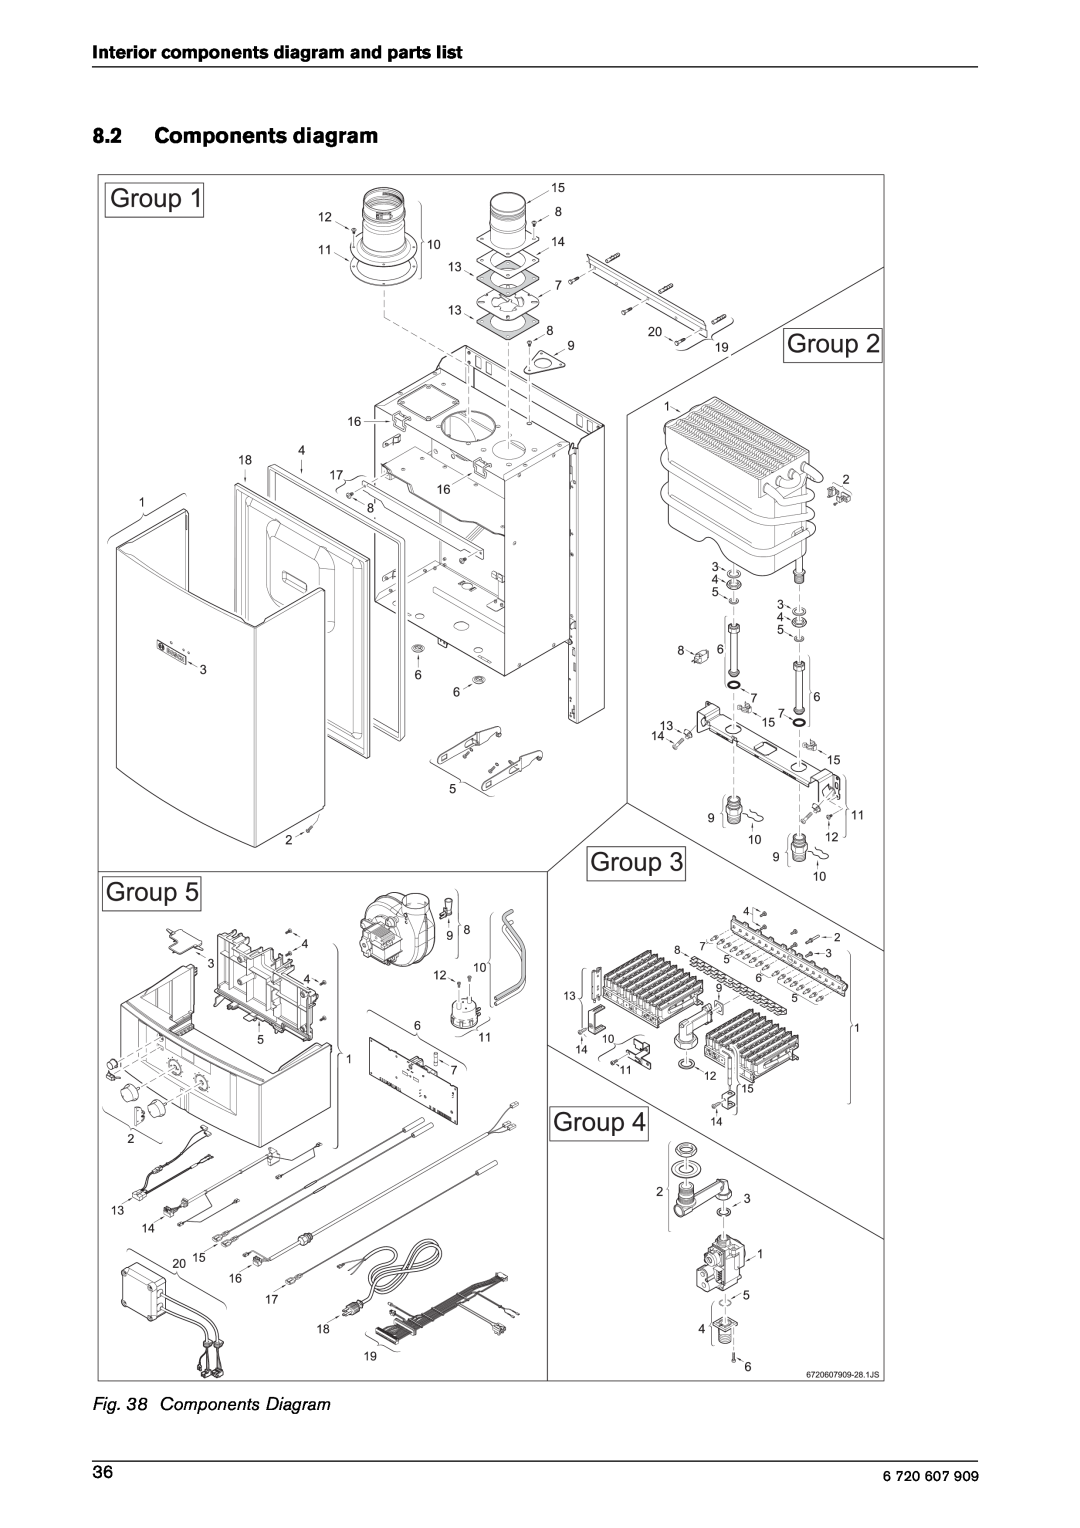 Bosch Appliances GWH-345/450-ESR-L Components diagram, Components Diagram, Interior components diagram and parts list 